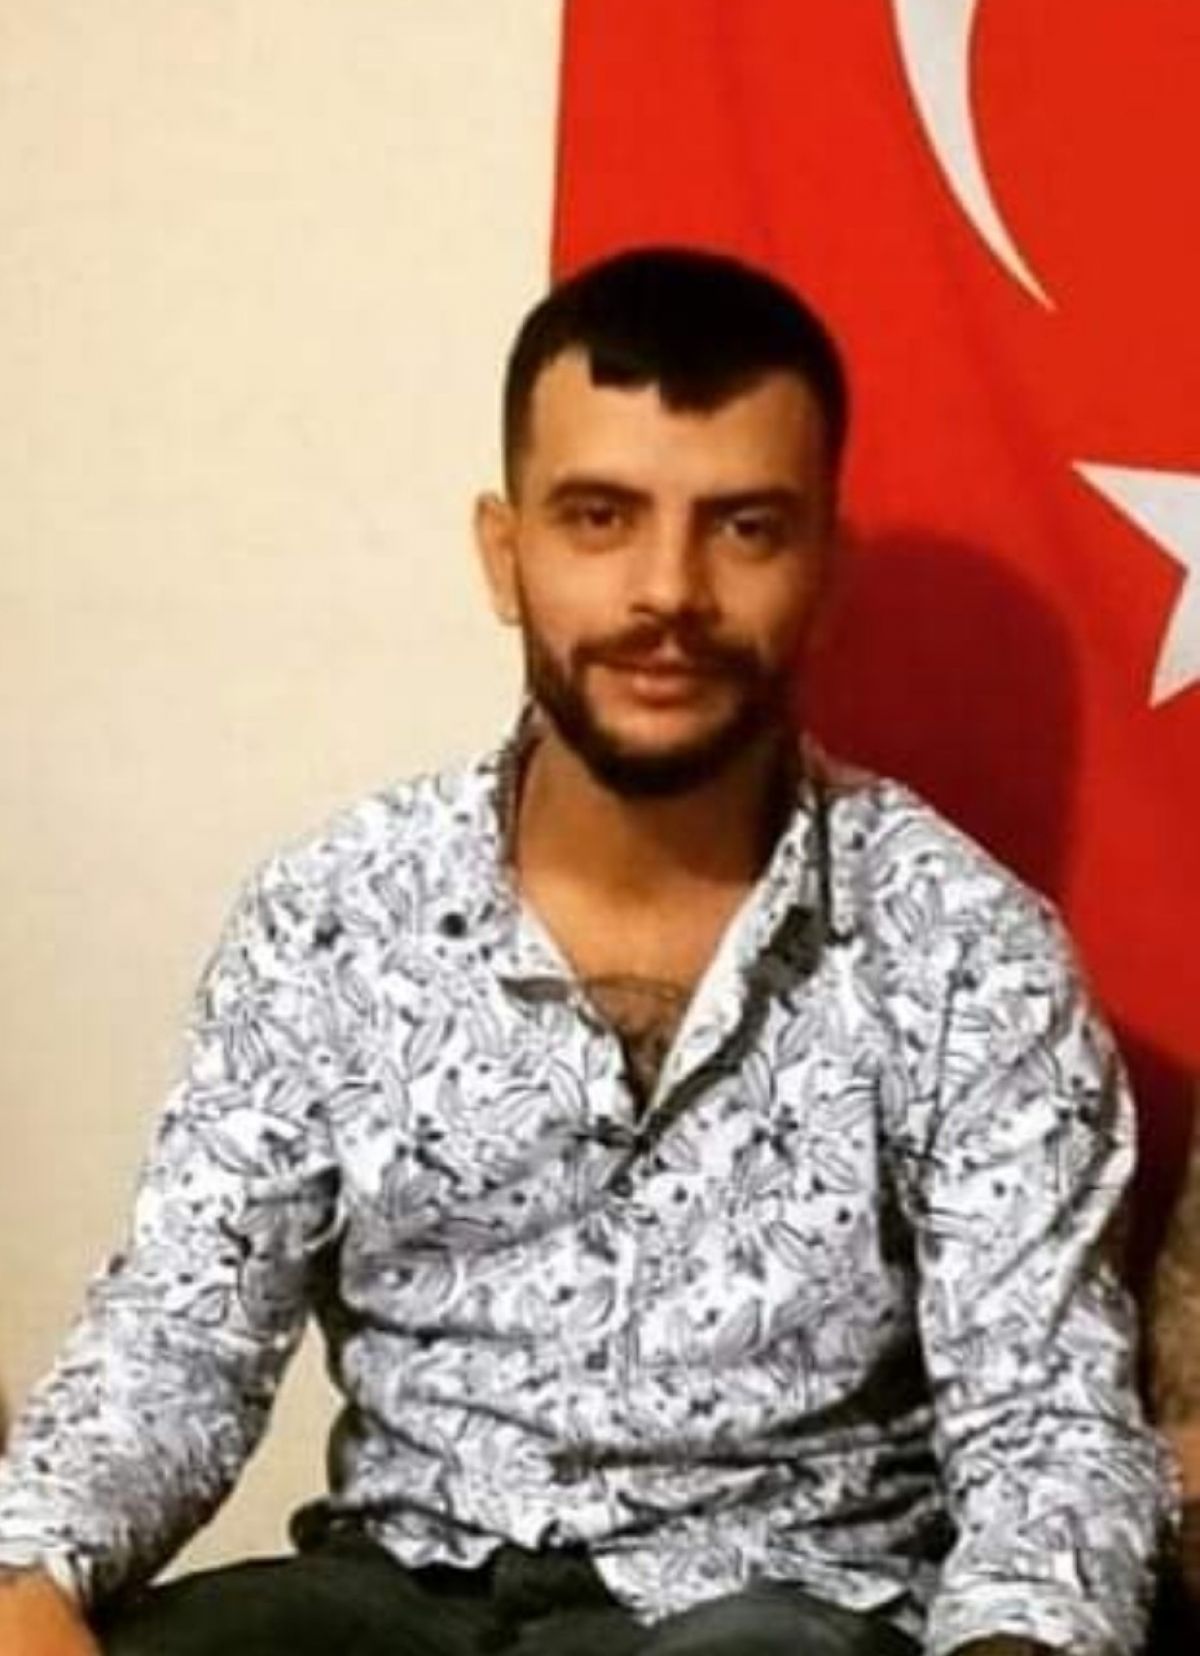 İzmir de cinayet: Av tüfeğiyle başından vuruldu #1